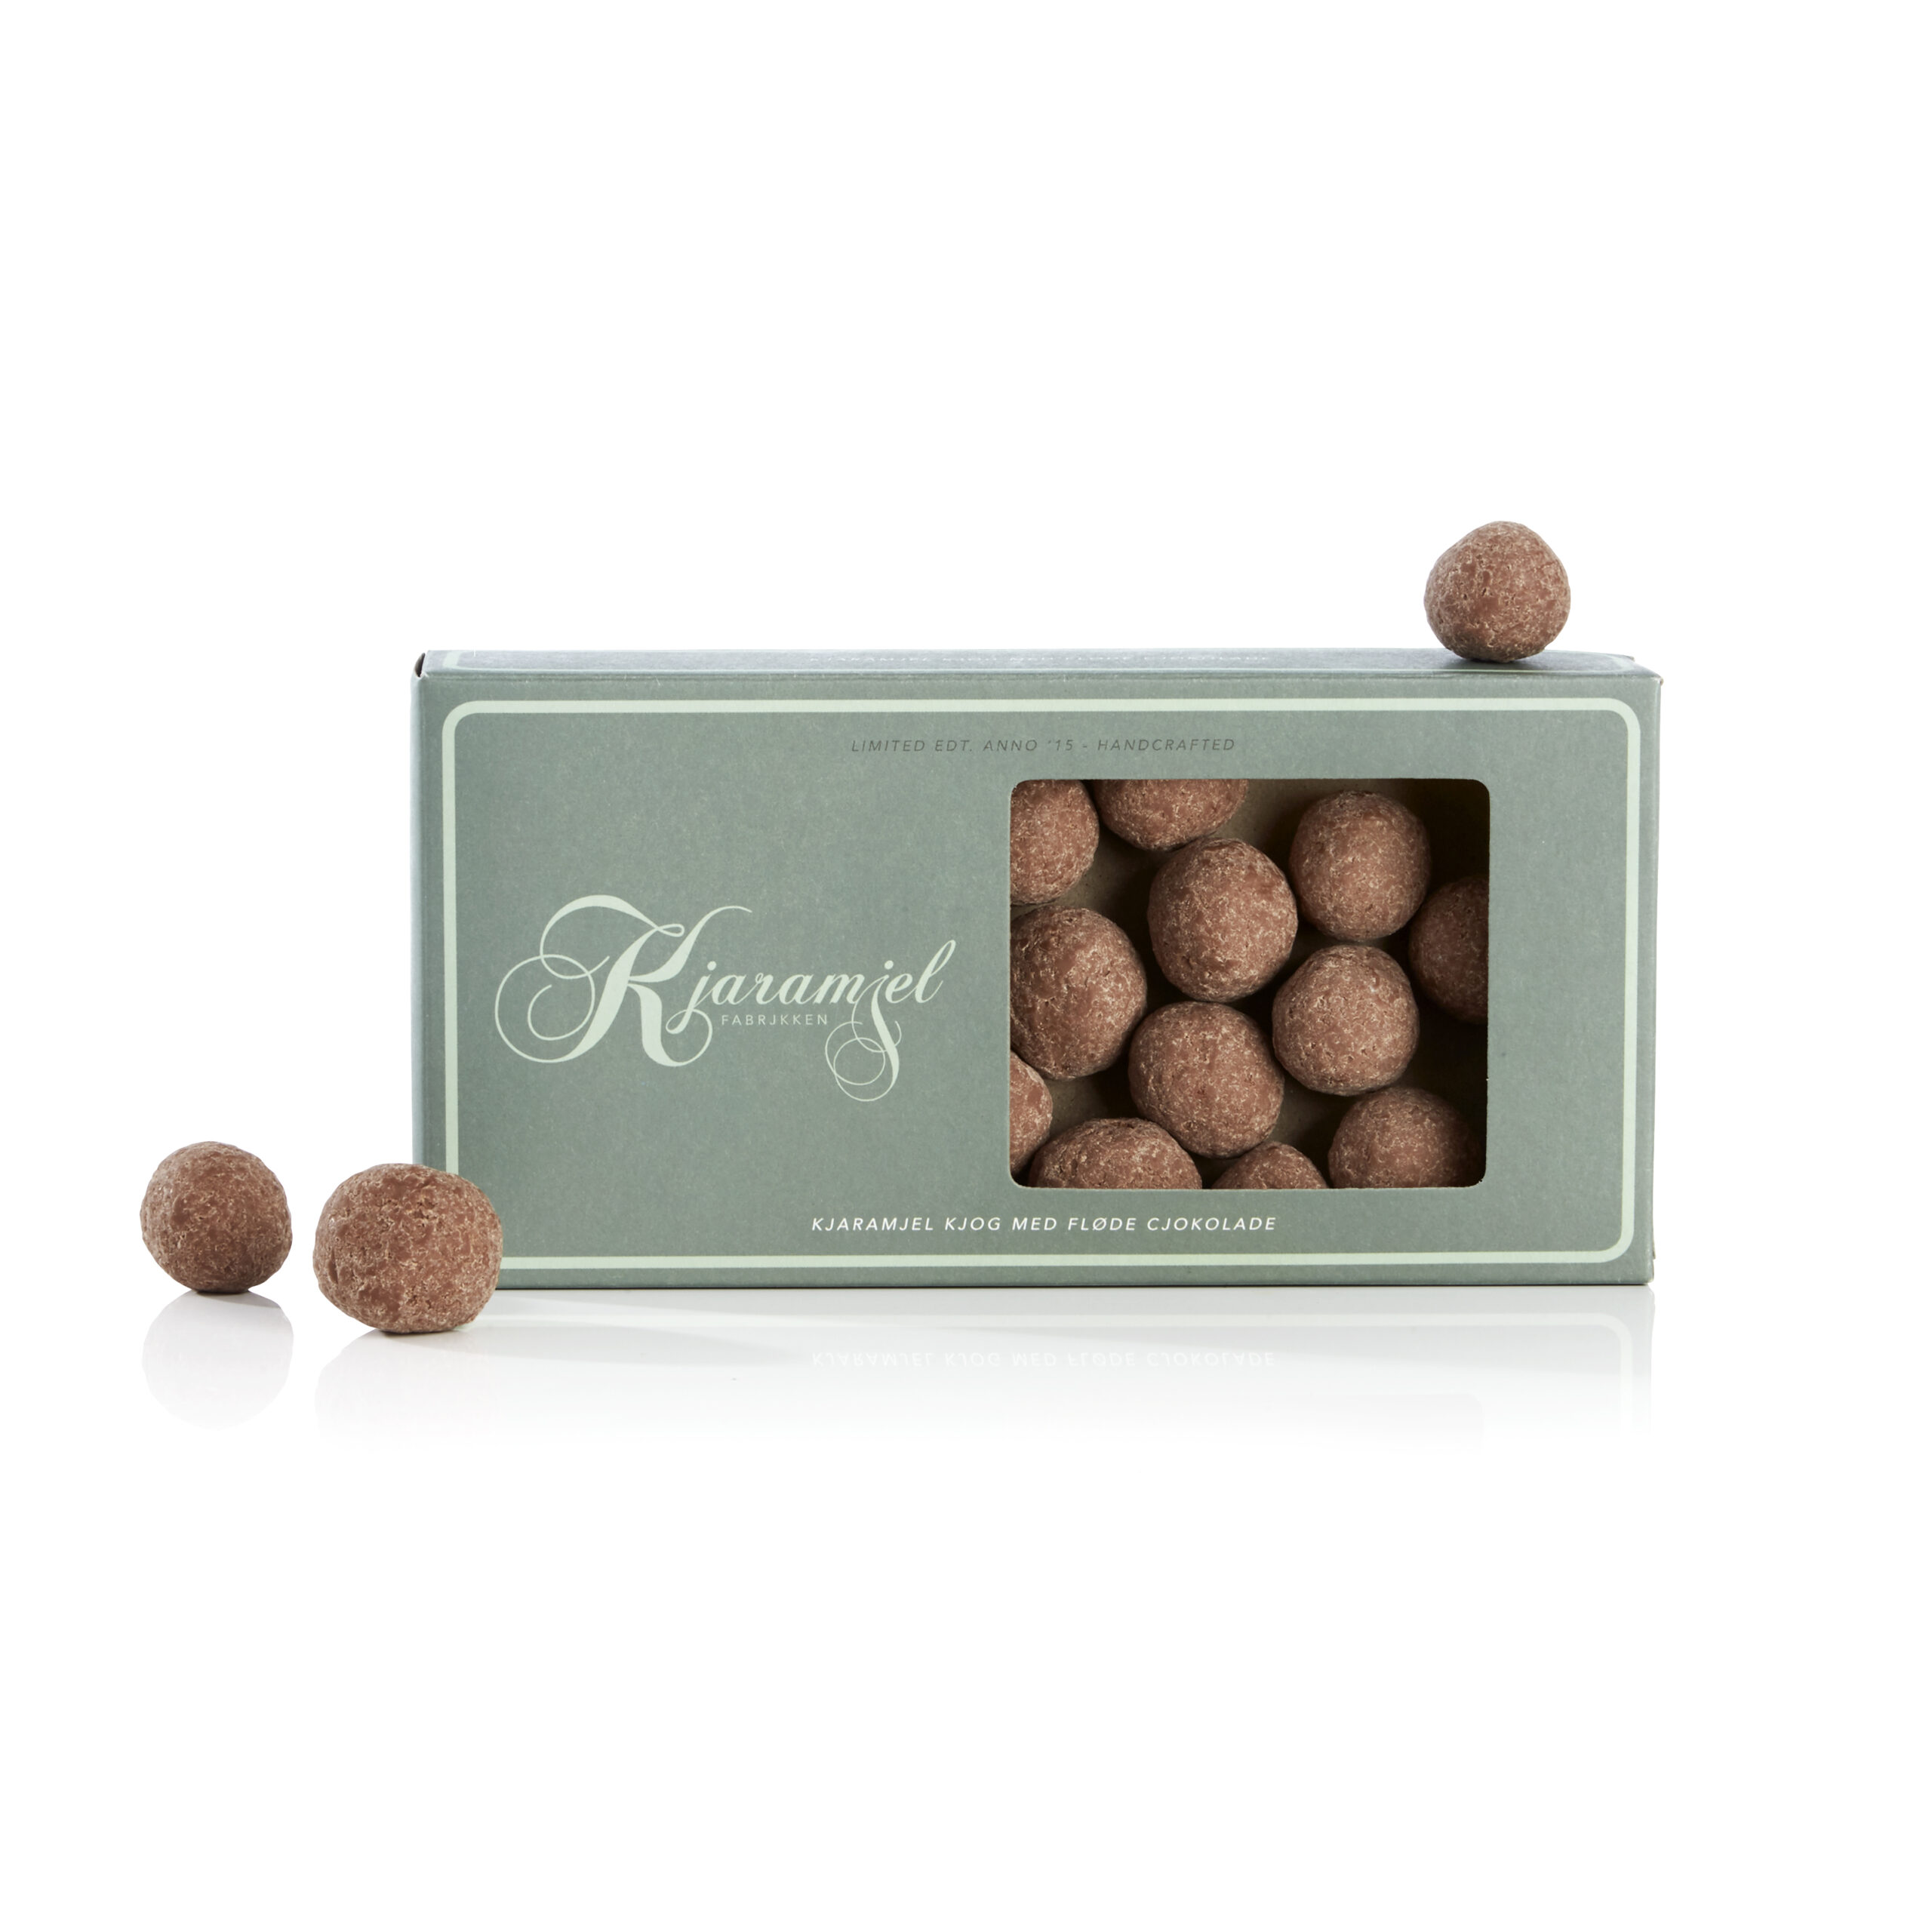 Se Kjaramjel kjog med fløde sjokolade - Karamelkugler m/ flødechokolade hos Cocoture.dk